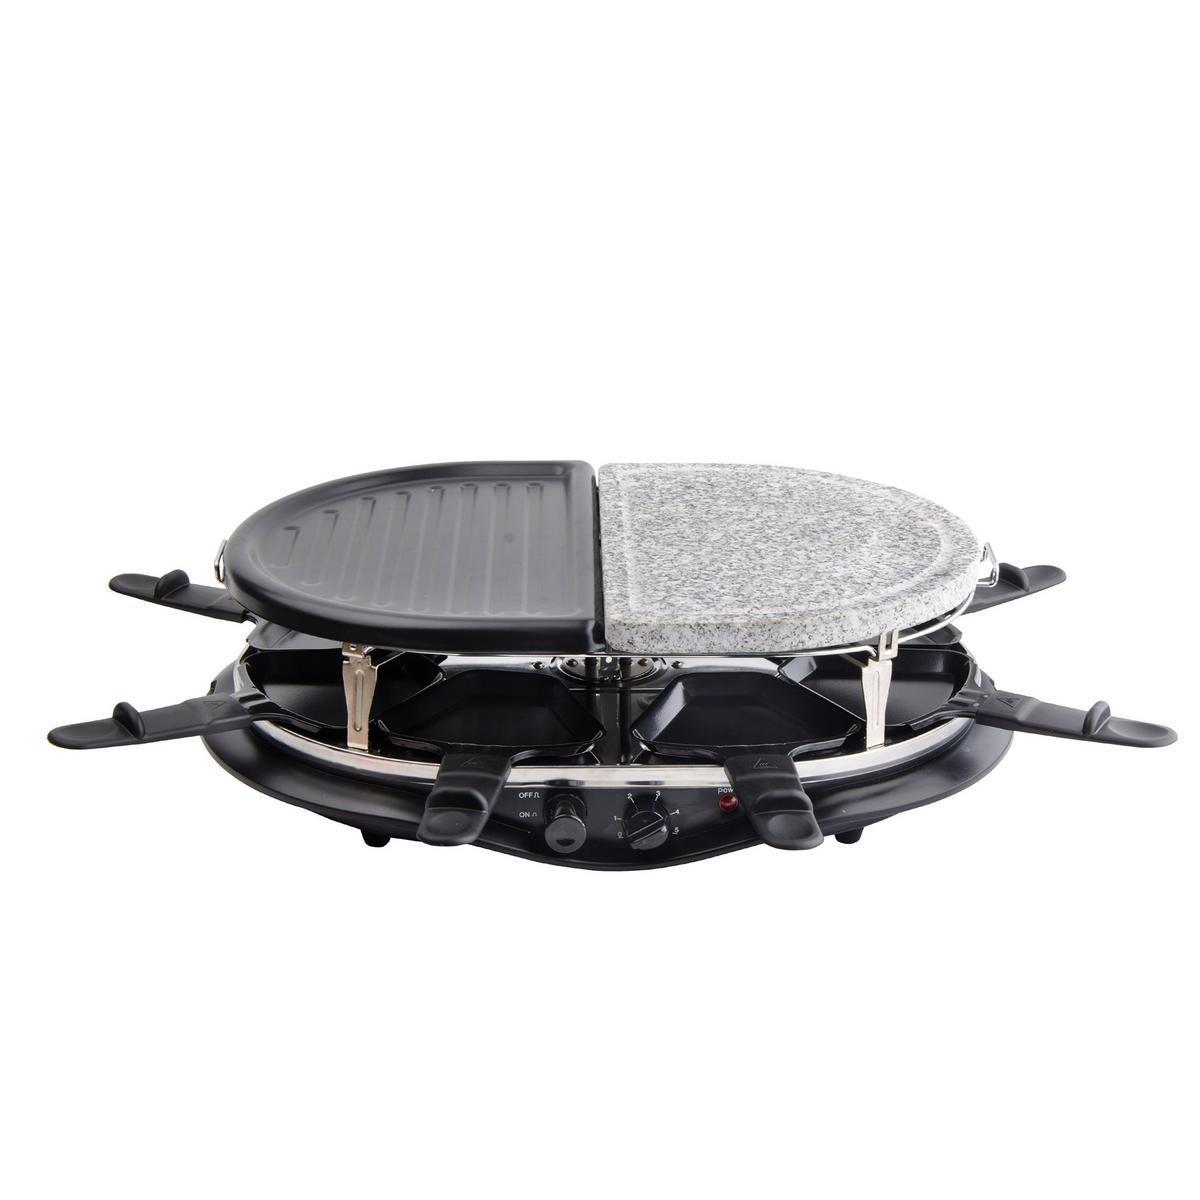 Raclette pierrade 8 personnes - Plastique, fer et pierre - 47,5 x 34 x H 12,5 cm - Noir